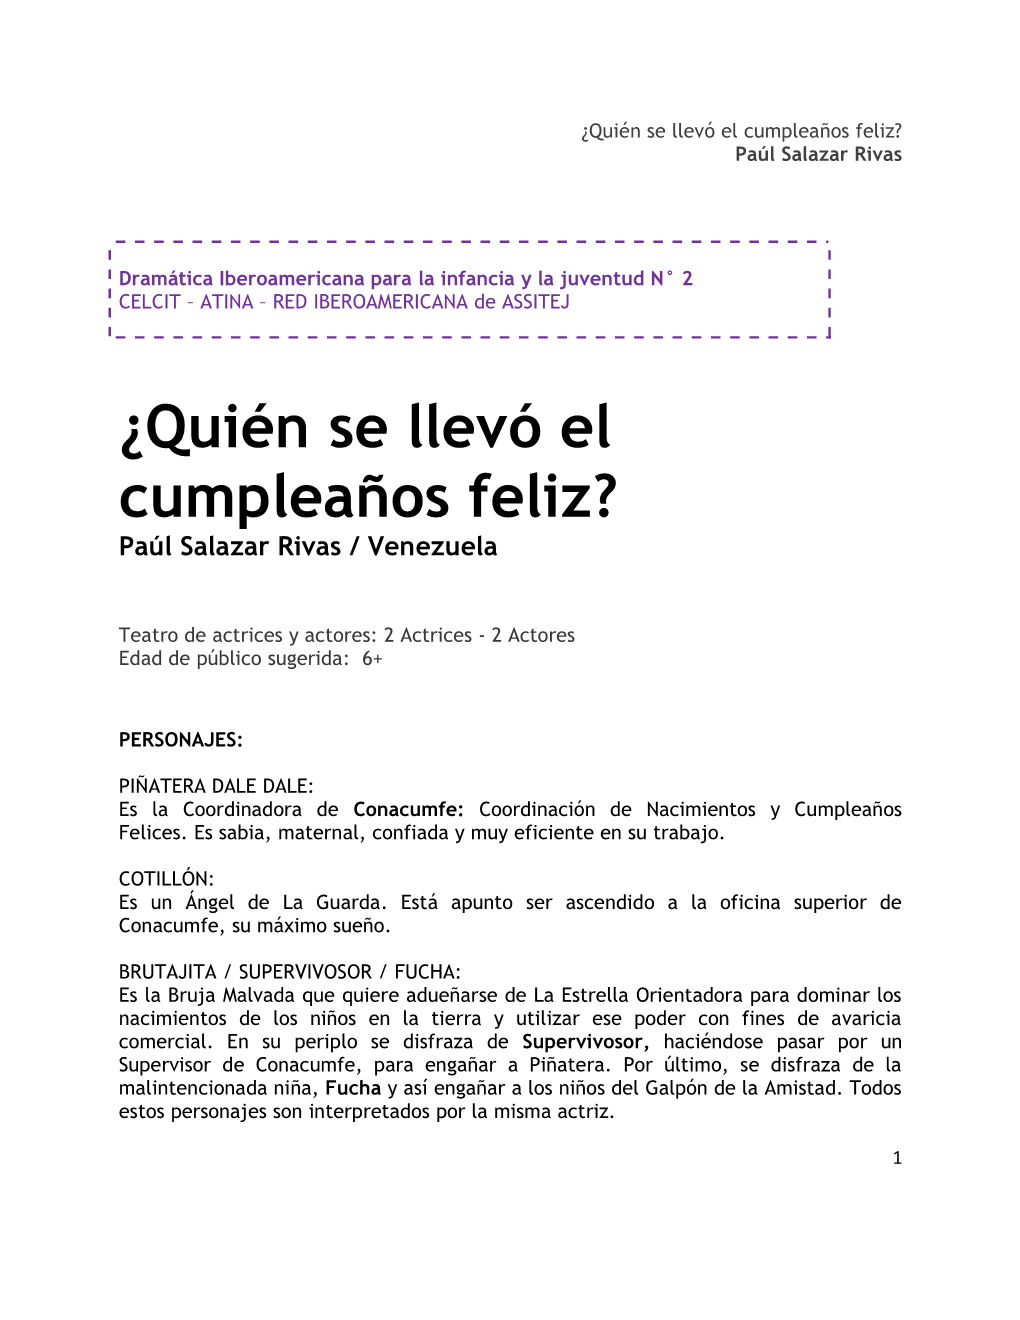 ¿Quién Se Llevó El Cumpleaños Feliz? Paúl Salazar Rivas